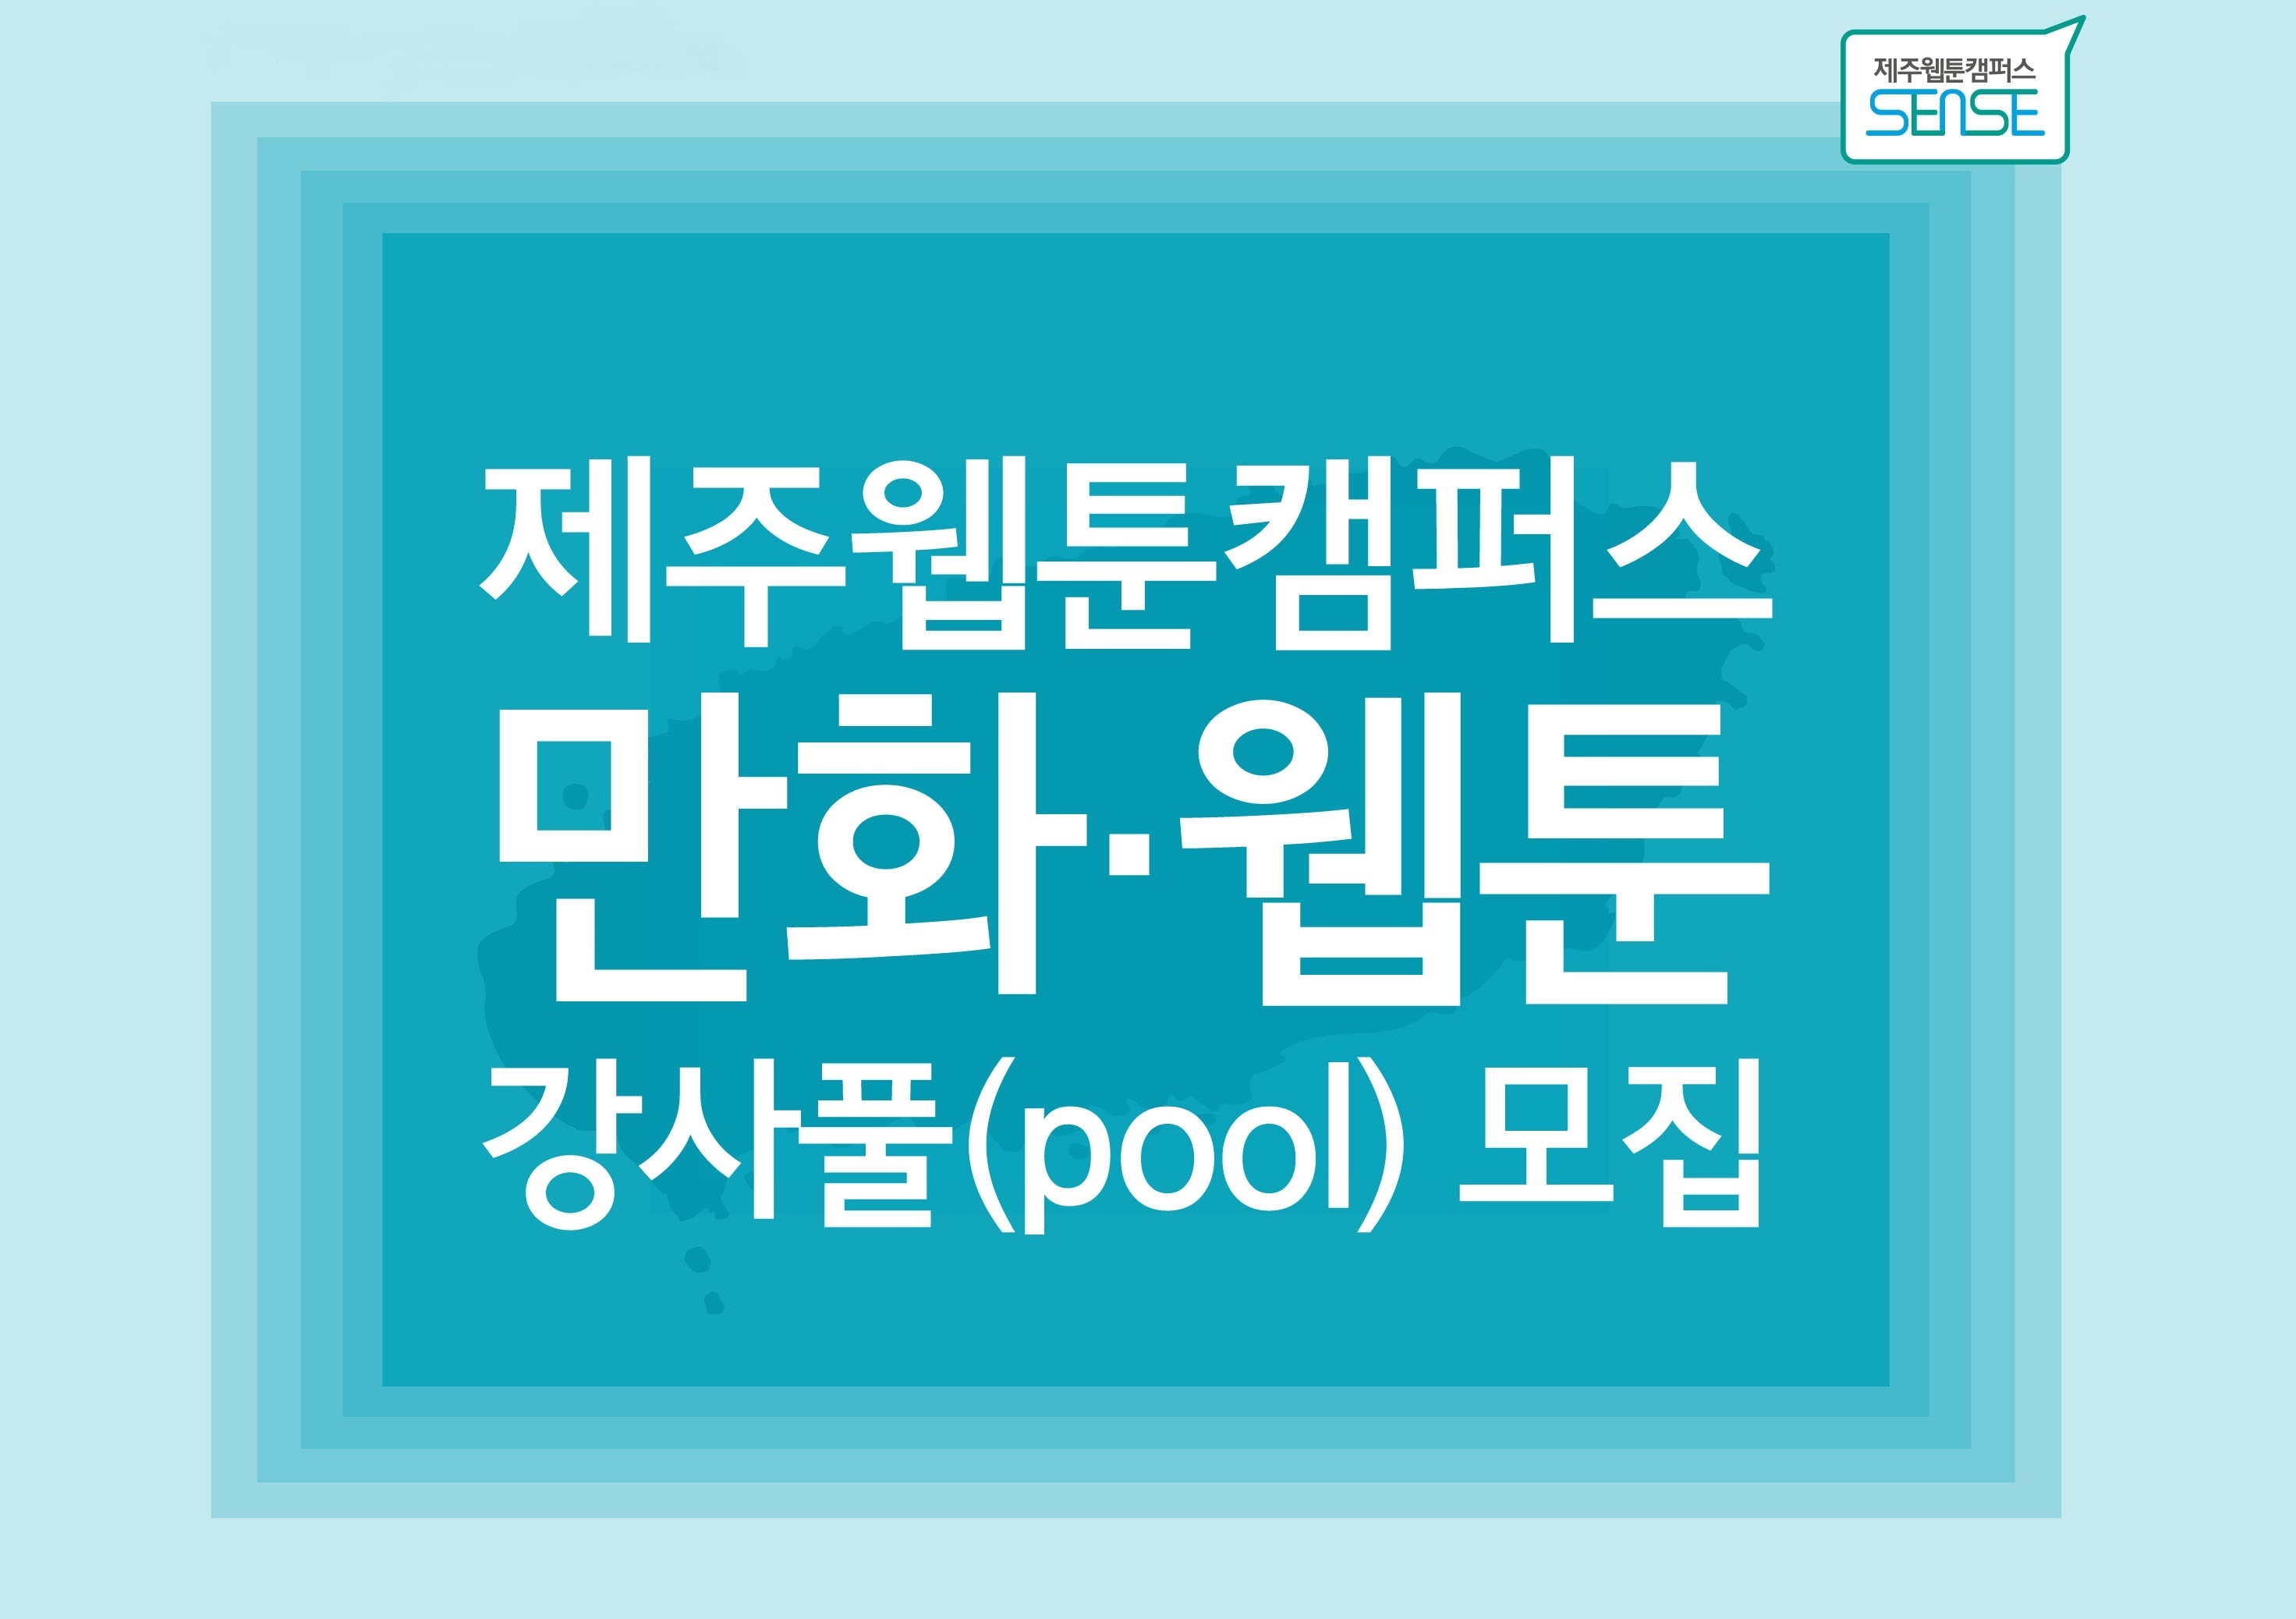 [모집공고] 2020 제주웹툰캠퍼스 만화·웹툰 강사풀(pool) 모집 공고